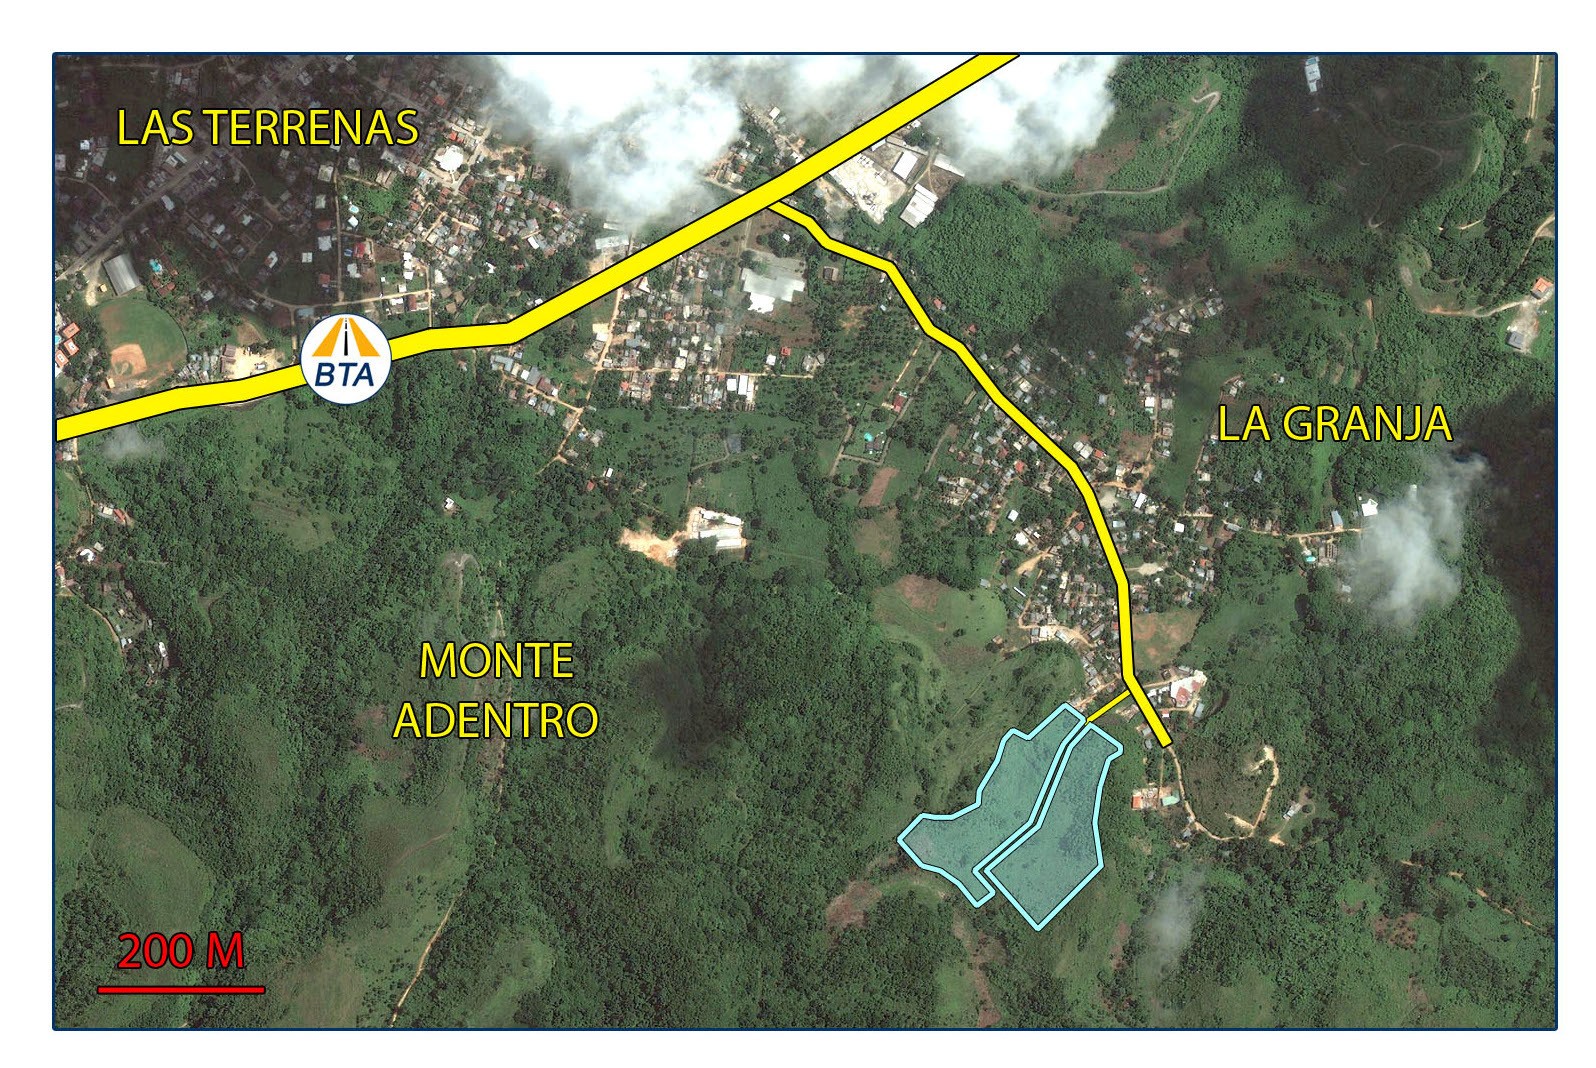 solares y terrenos - Terreno Las Terrenas - Sector La Granja - Muy tranquilo - 80$/m2 0